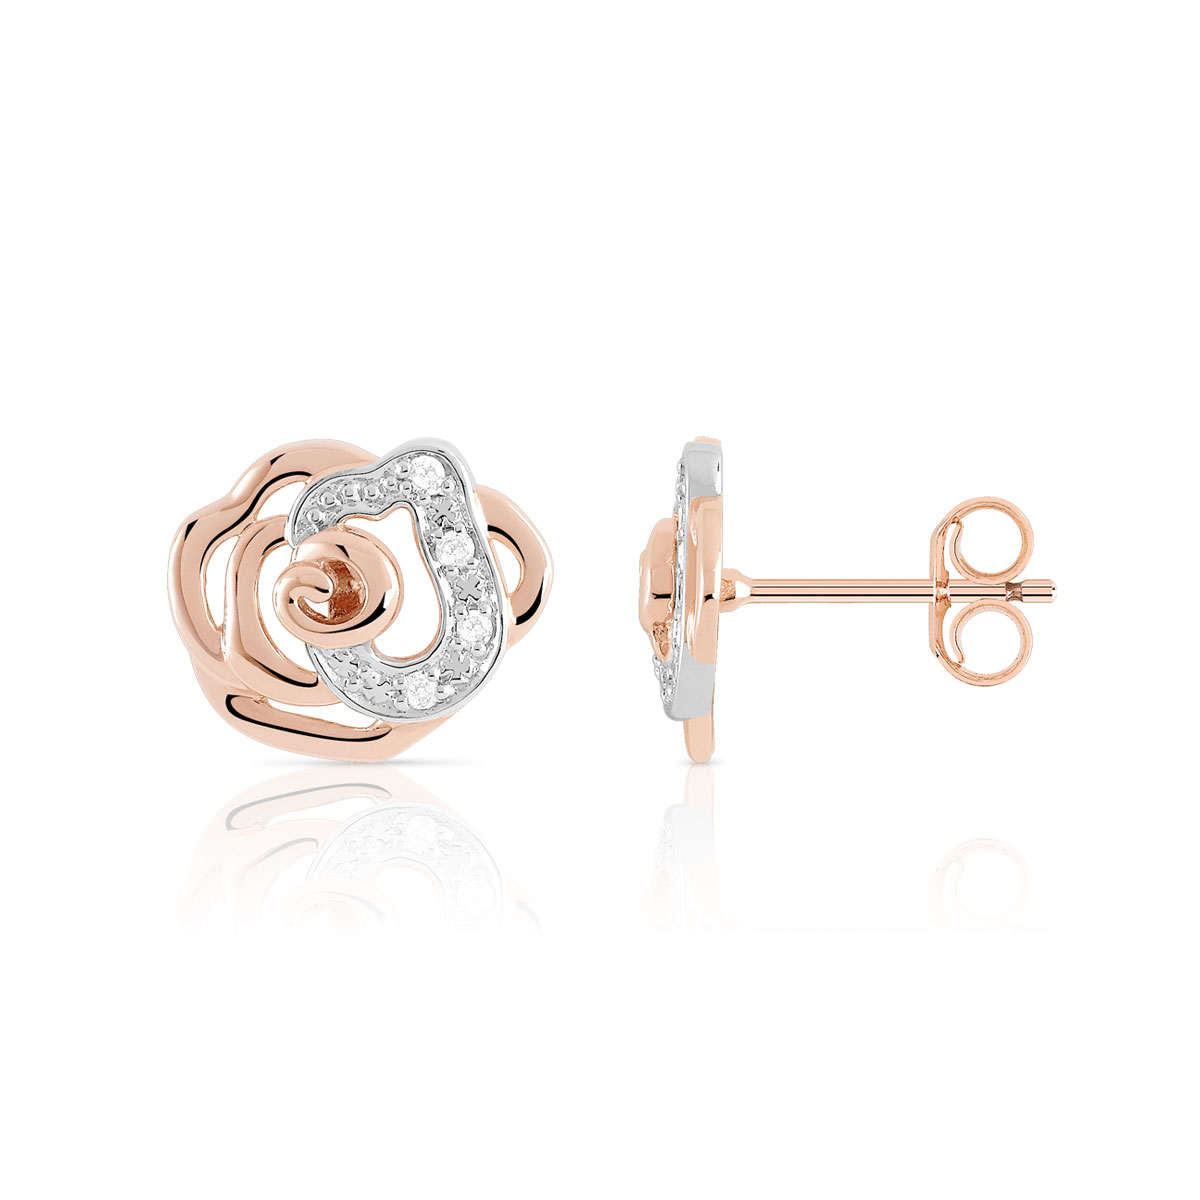 Boucles d'oreilles or 375 rose fleur diamants